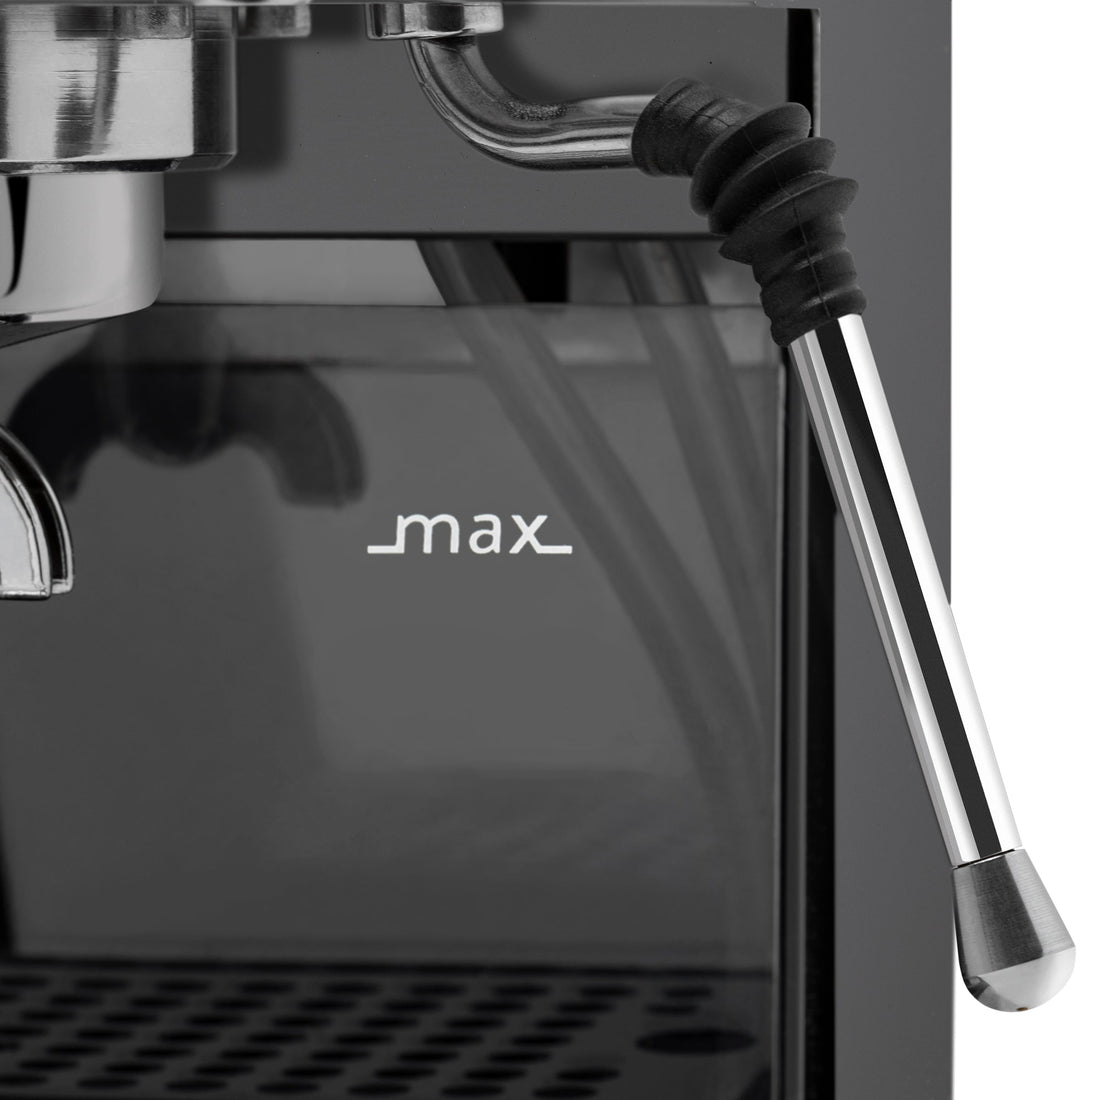 Gaggia Classic Evo Pro Espresso Machine in Industrial Grey with Tiger Maple